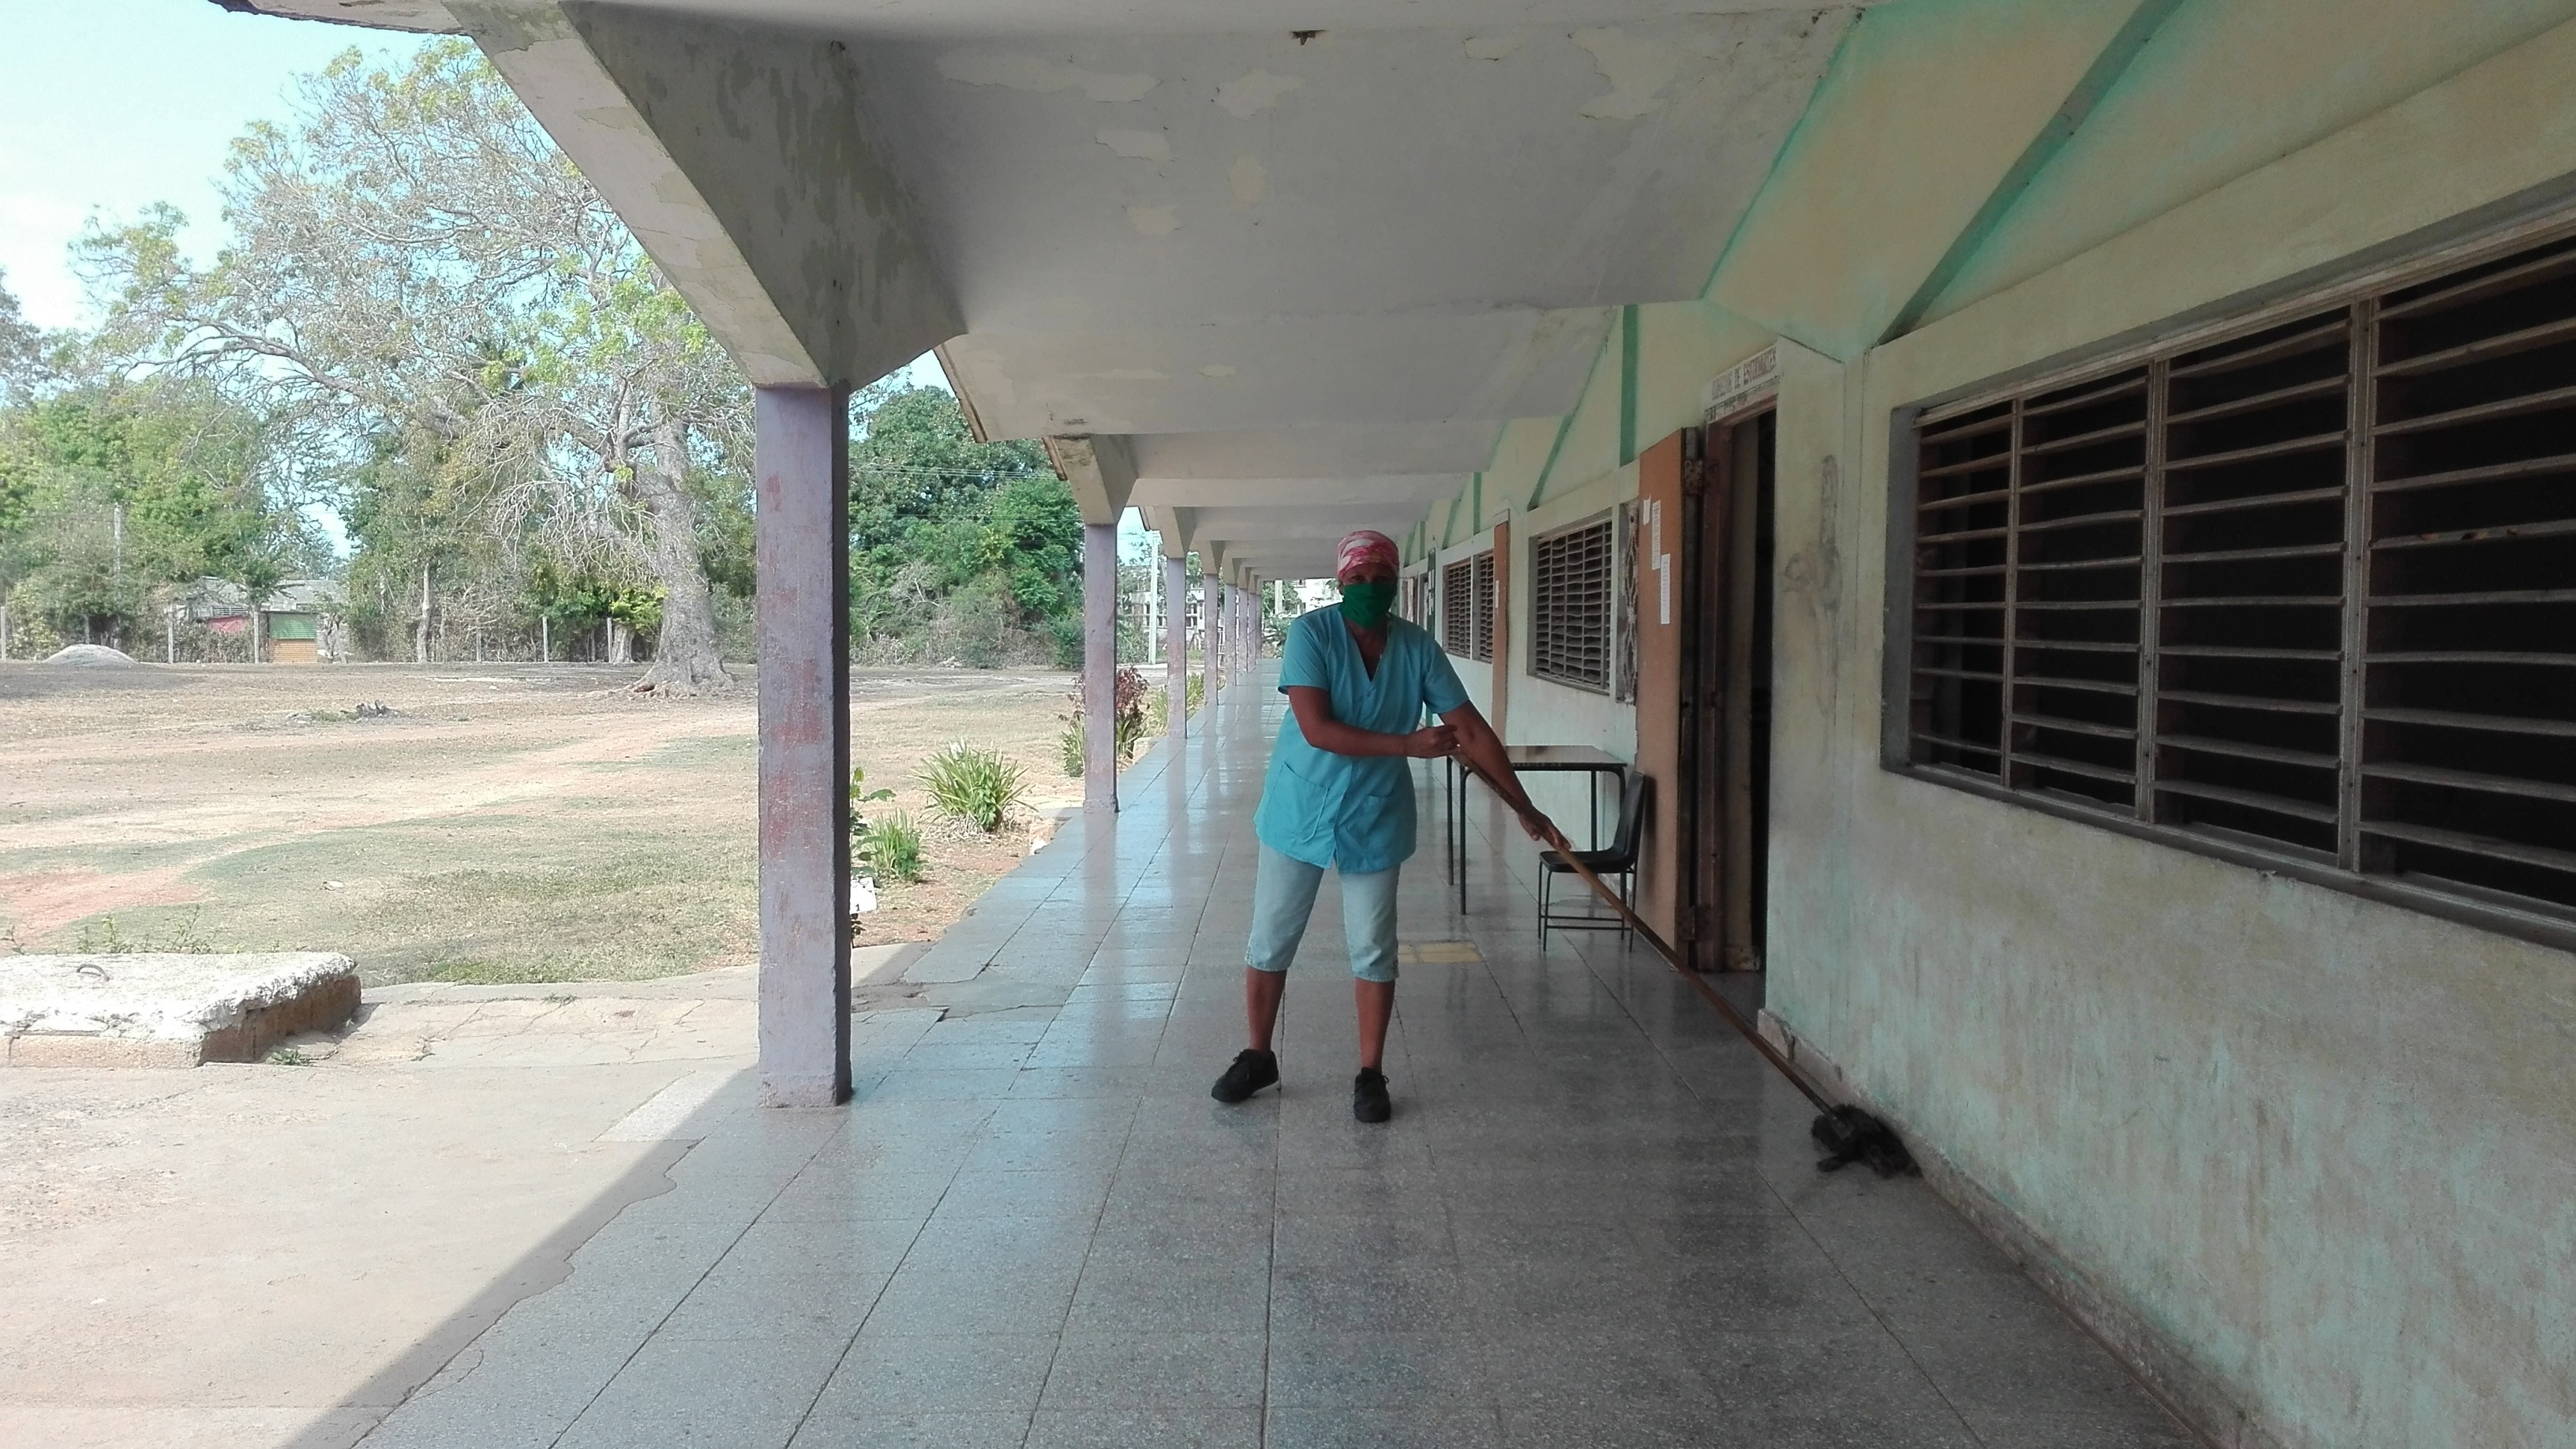 Los trabajadores del centro educacional se encargan de la limpieza // Foto Marlene Herrera